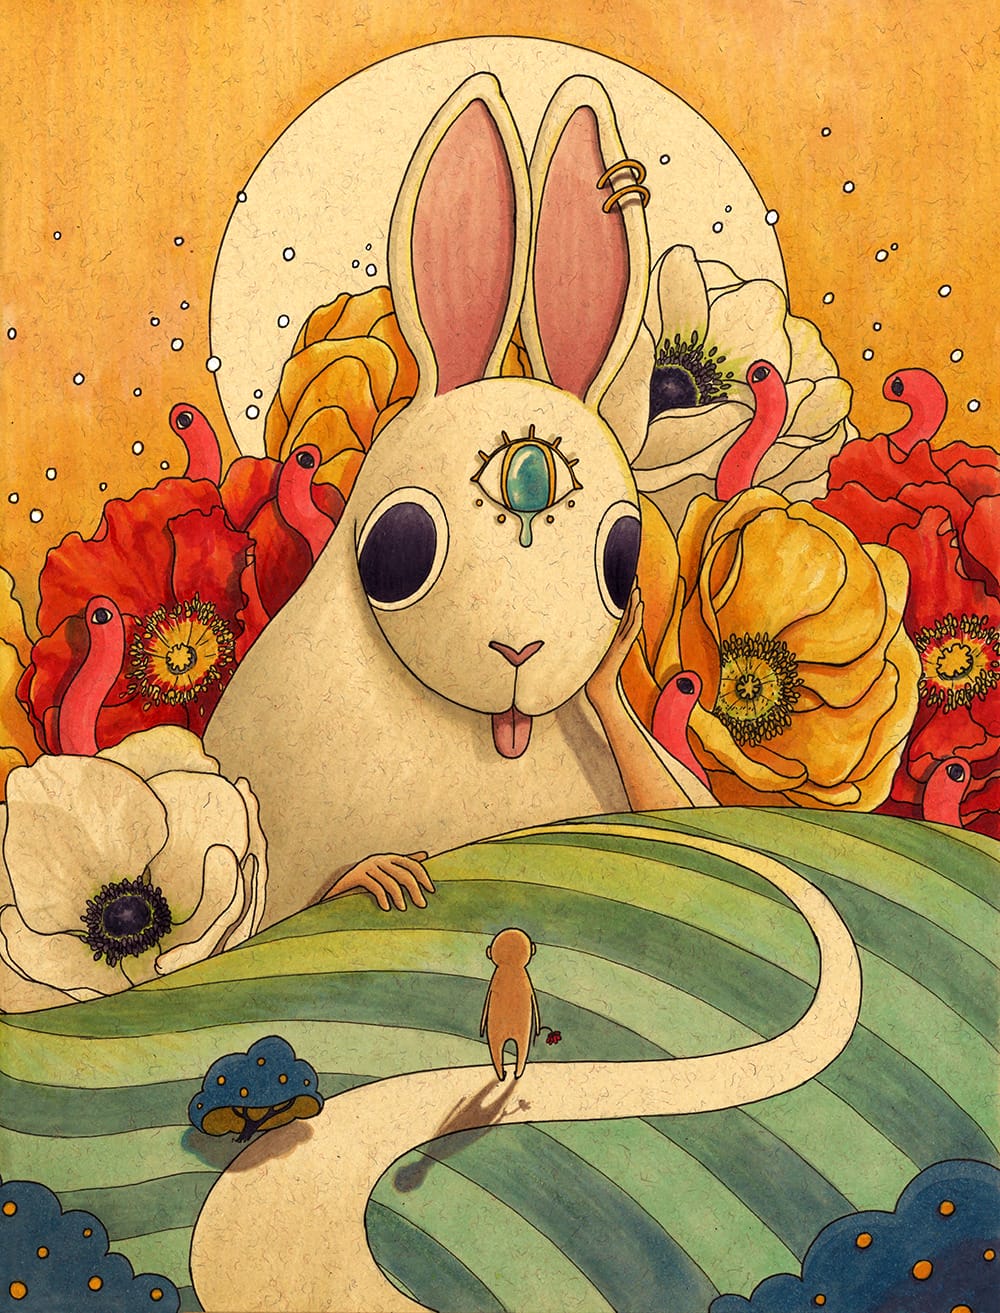 Illustration de Felicia Chiao, un lapin géant avec 3 yeux fait face à un petit protagoniste.